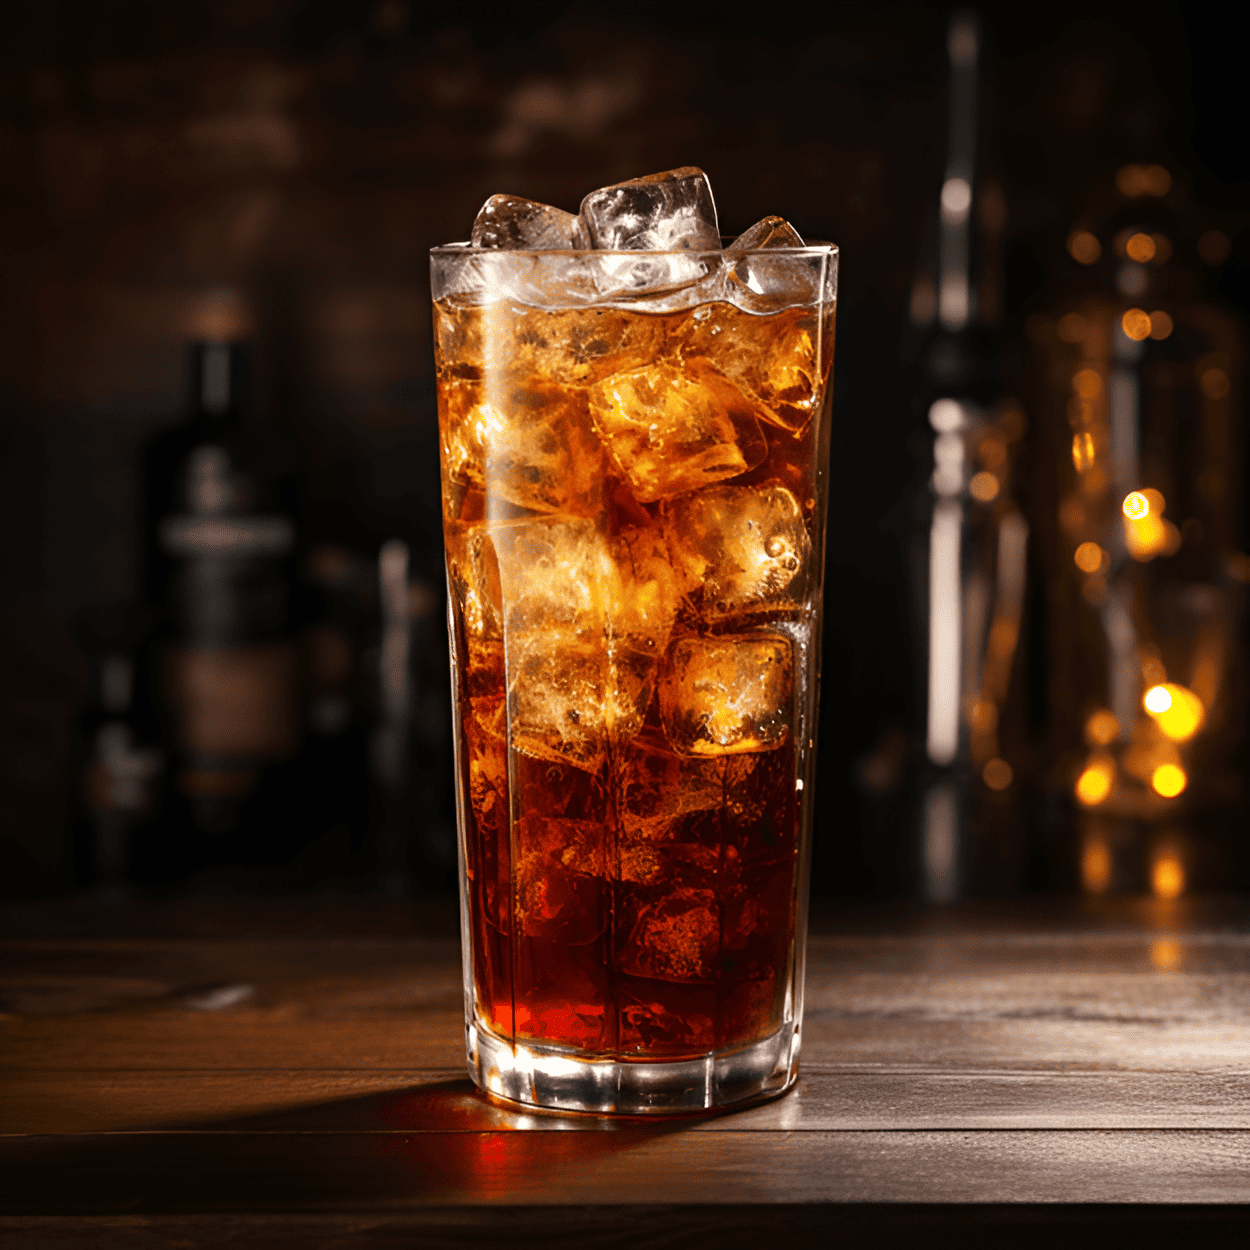 Lemmy Cóctel Receta - El cóctel Lemmy es una bebida robusta y potente. El sabor es una mezcla fuerte del whisky Jack Daniels ahumado, dulce y ligeramente picante, combinado con la Coca-Cola efervescente, dulce y ligeramente ácida. Es un cóctel bien equilibrado que no es demasiado dulce, no es demasiado fuerte, sino justo.